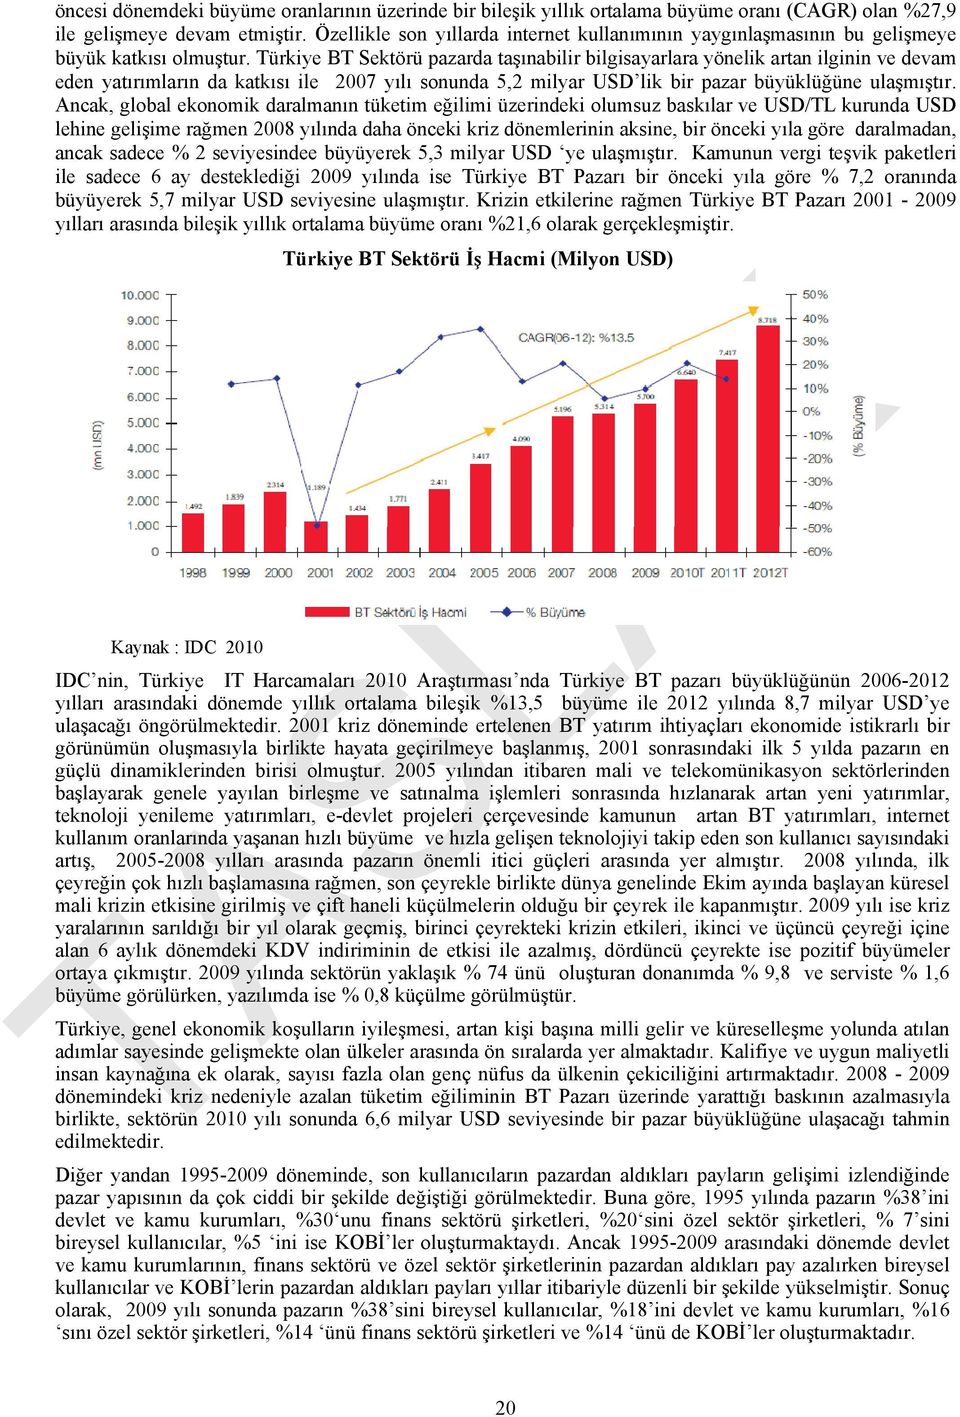 Türkiye BT Sektörü pazarda taşınabilir bilgisayarlara yönelik artan ilginin ve devam eden yatırımların da katkısı ile 2007 yılı sonunda 5,2 milyar USD lik bir pazar büyüklüğüne ulaşmıştır.